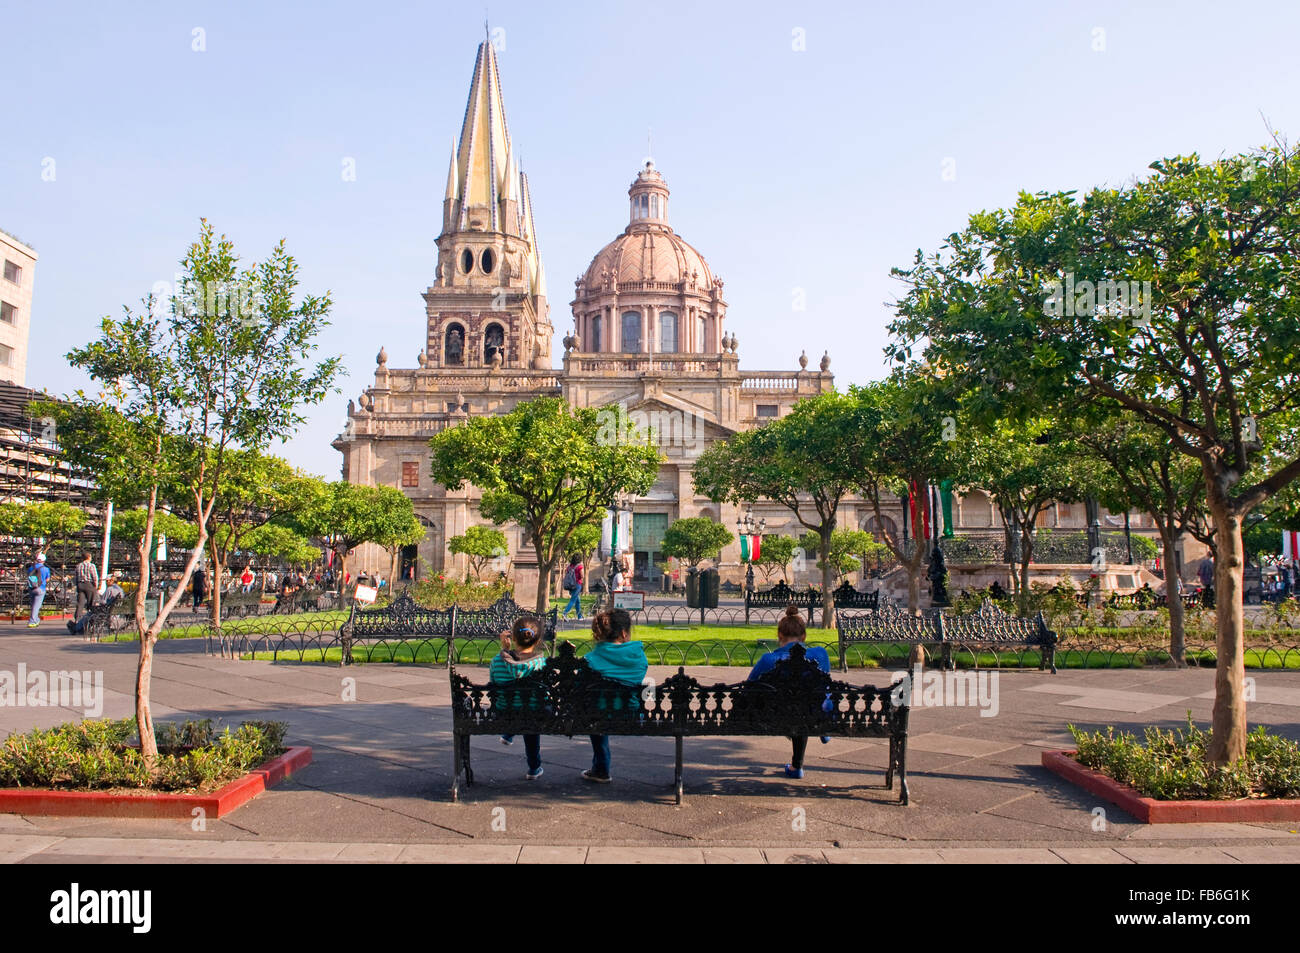 La gente descansando en la plaza (plaza) cerca de la Metropolitana Caatedral (catedral) en Guadalajara, México Foto de stock